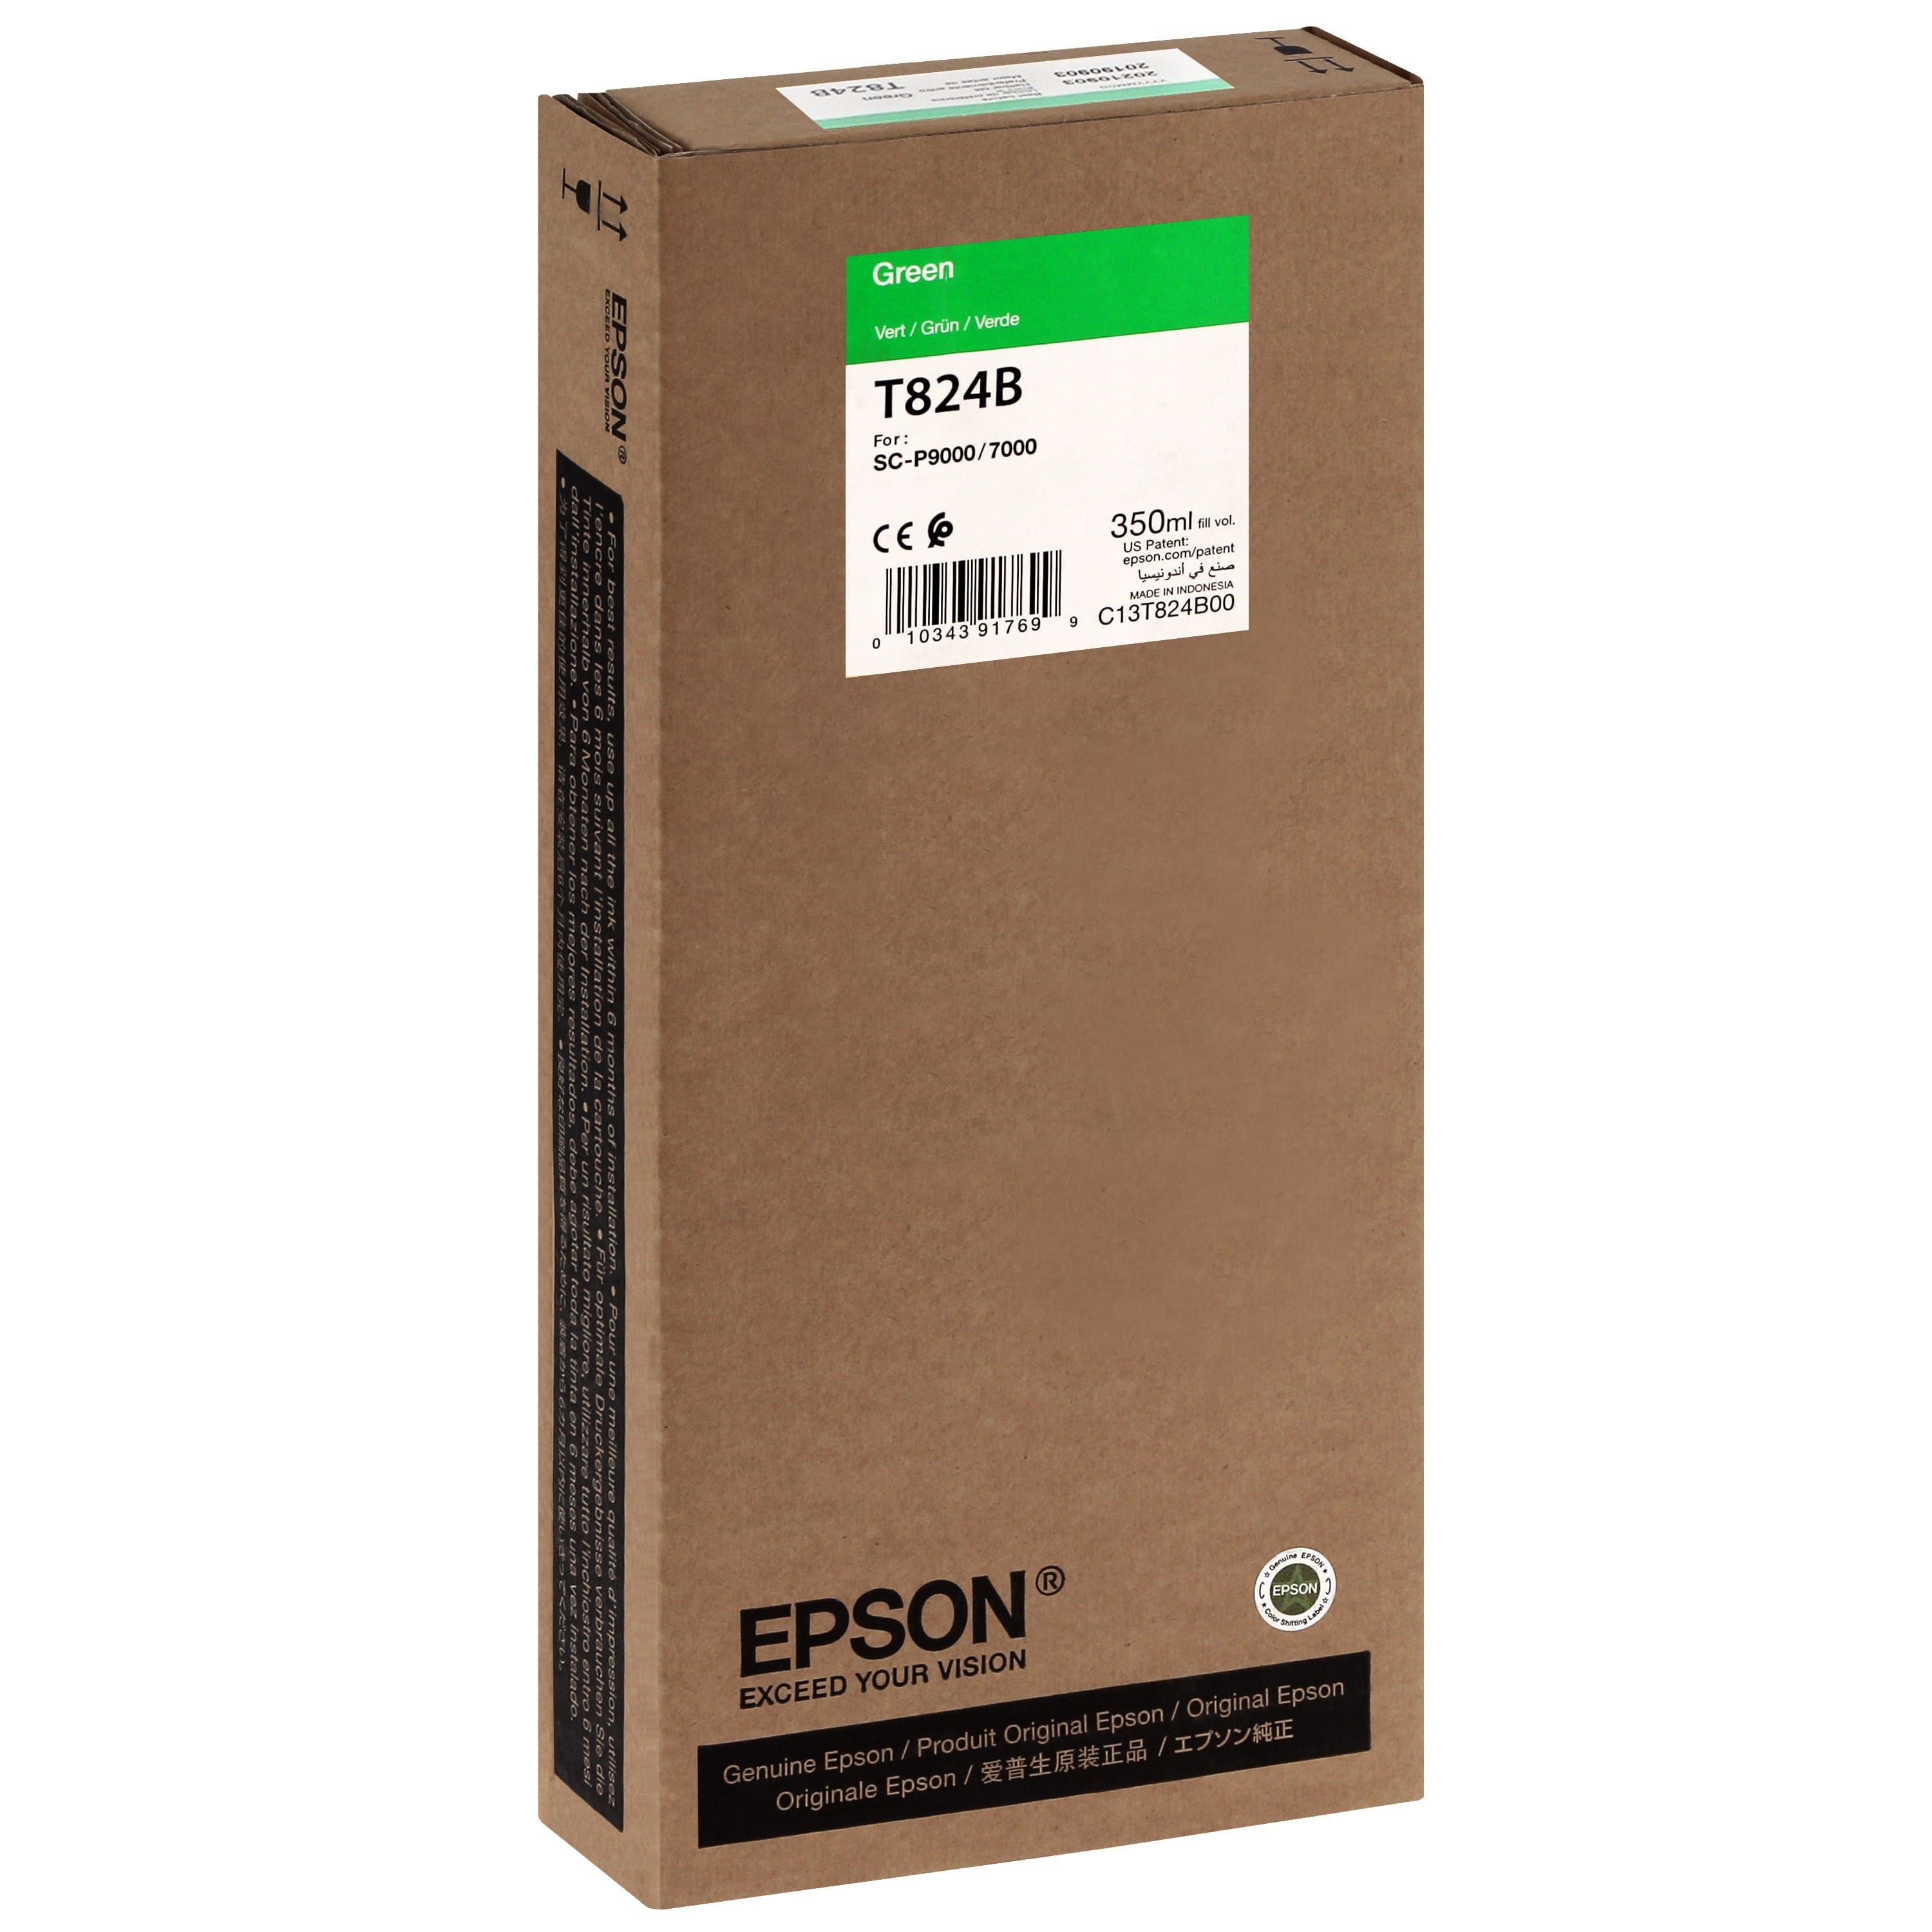 EPSON - Cartouche d'encre traceur T824B Pour imprimante SC-P7000/7000V/9000/9000V Vert - 350ml